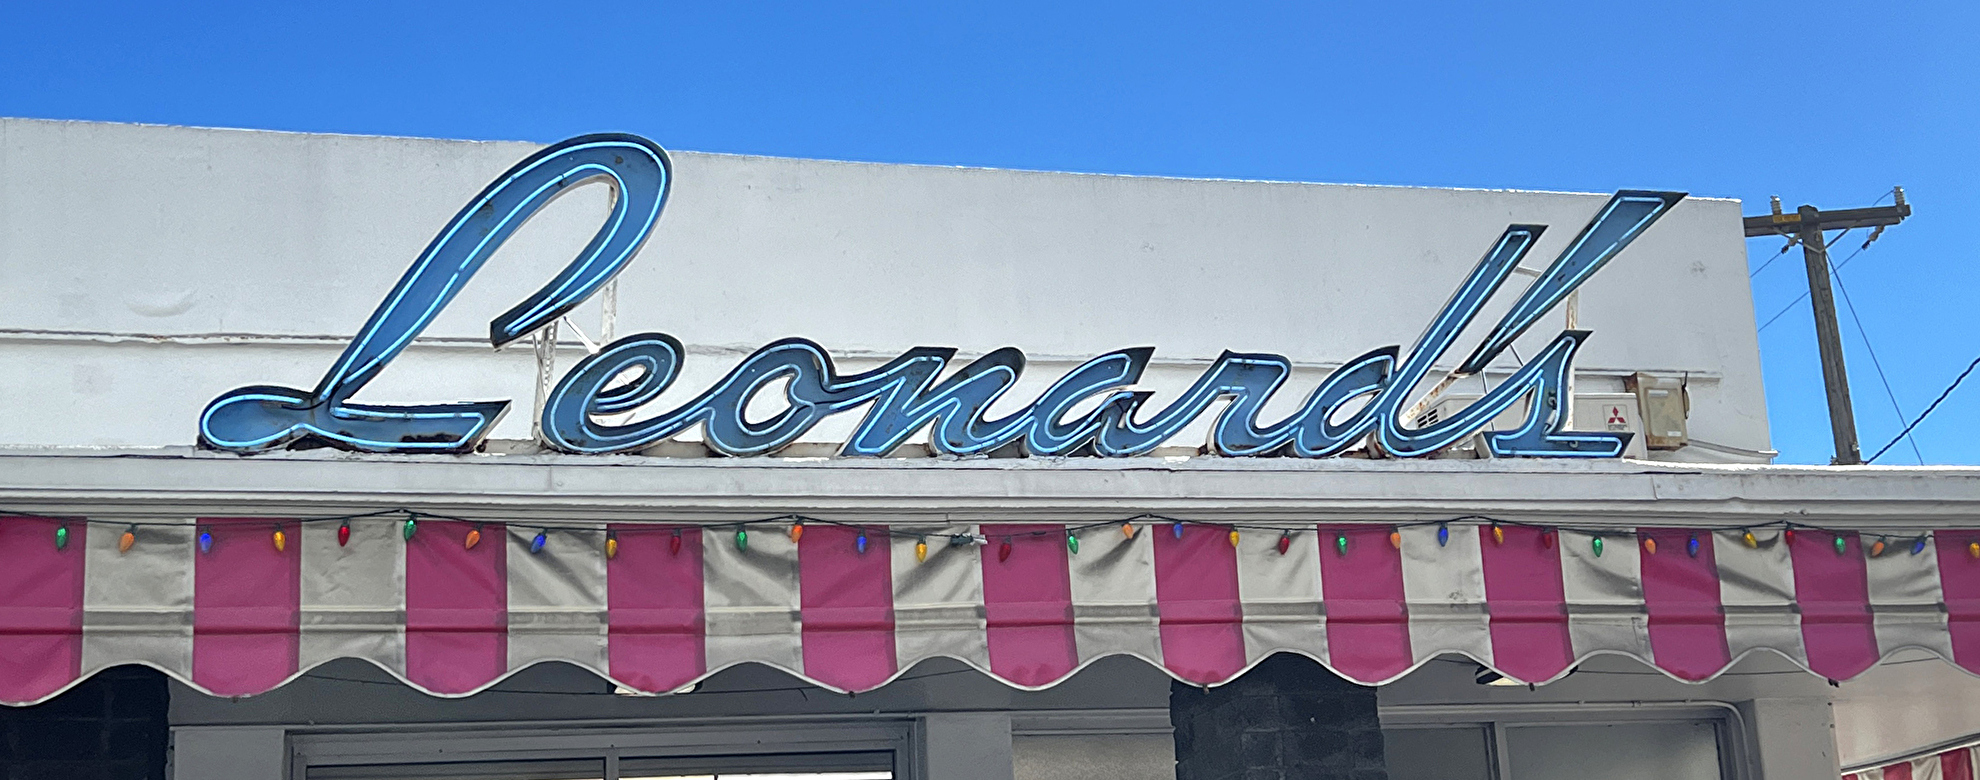 ”レナーズベーカリー(Leonard’s Bakery)” ハワイを代表するマラサダの名店への行き方や商品の買い方を解説